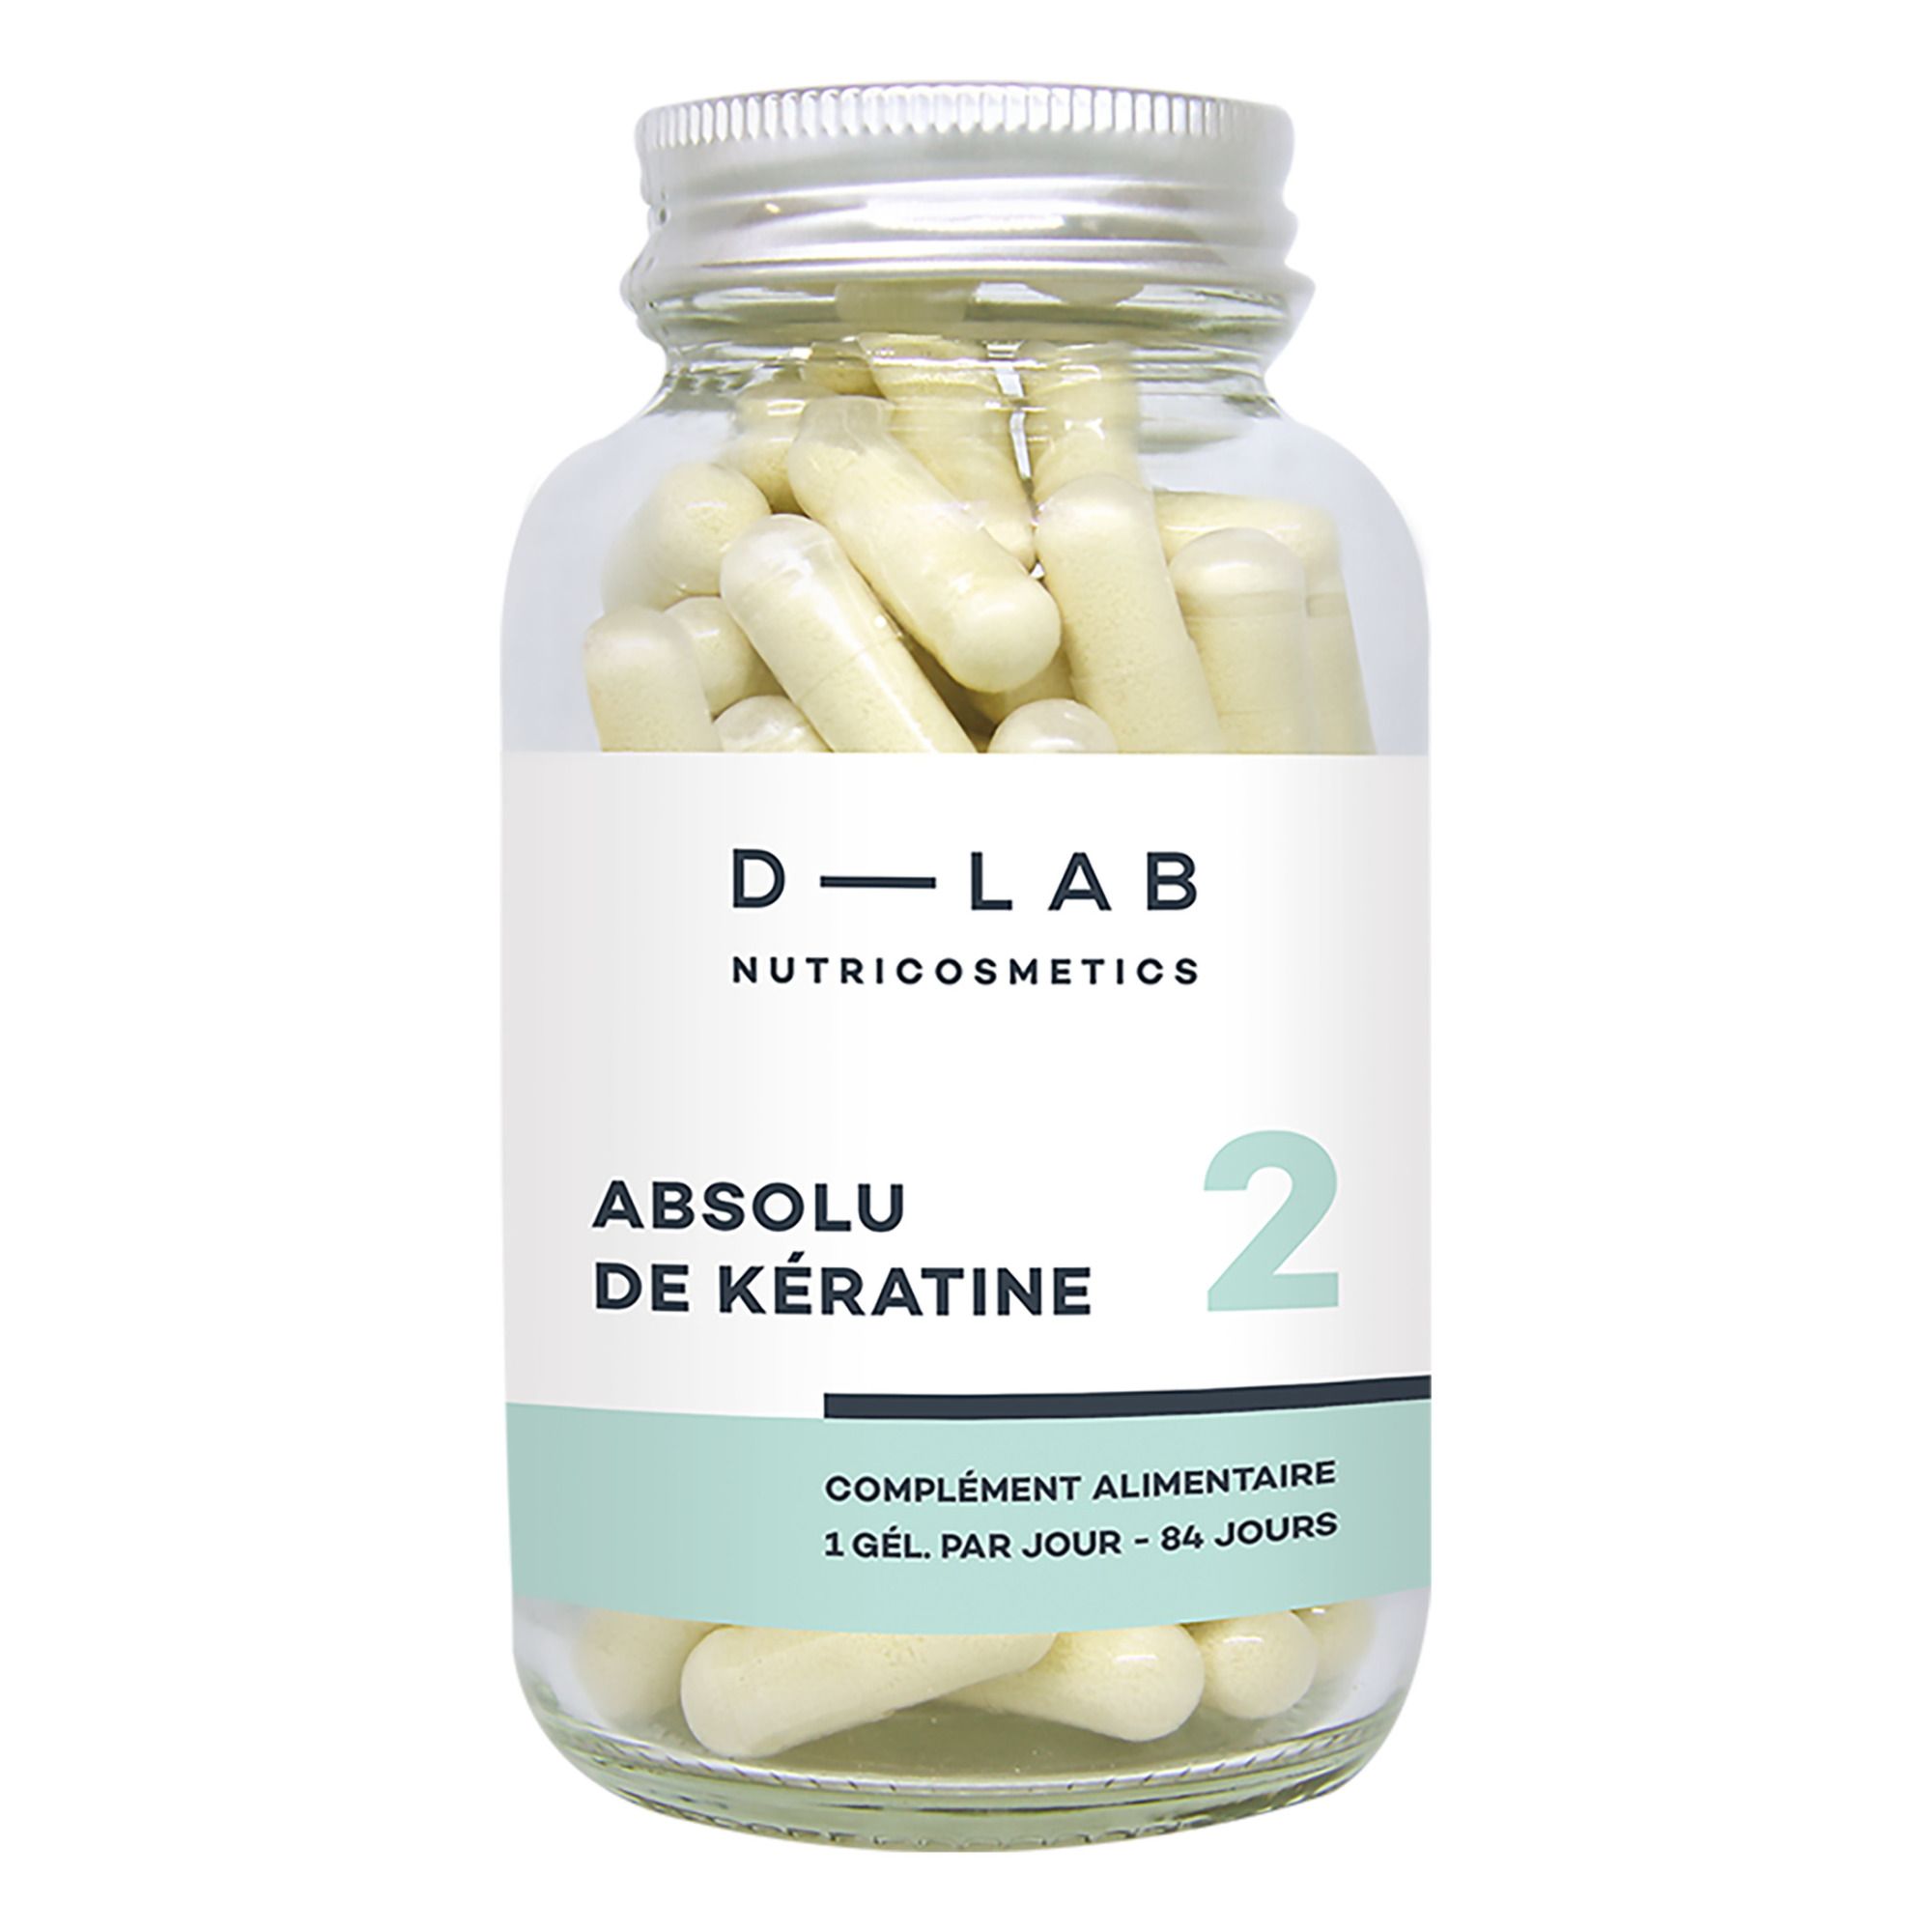 D-LAB NUTRICOSMETICS - Absolu de Kératine Complément alimentaire - 3 mois